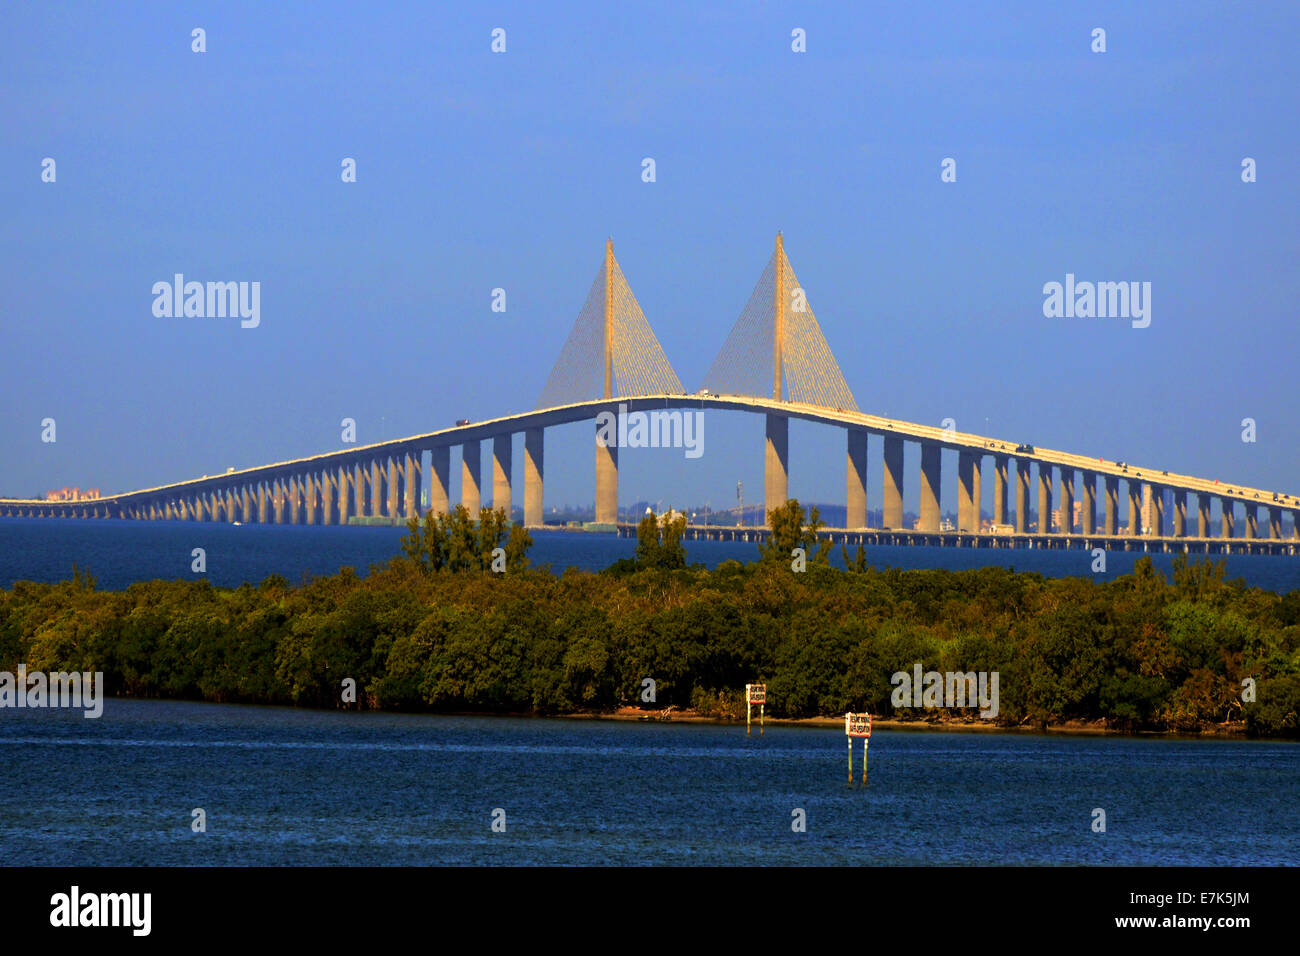 El Bob Graham Sunshine Skyway Bridge es un puente de la Bahía de Tampa, Florida, con un cable principal nos alojamos span Foto de stock